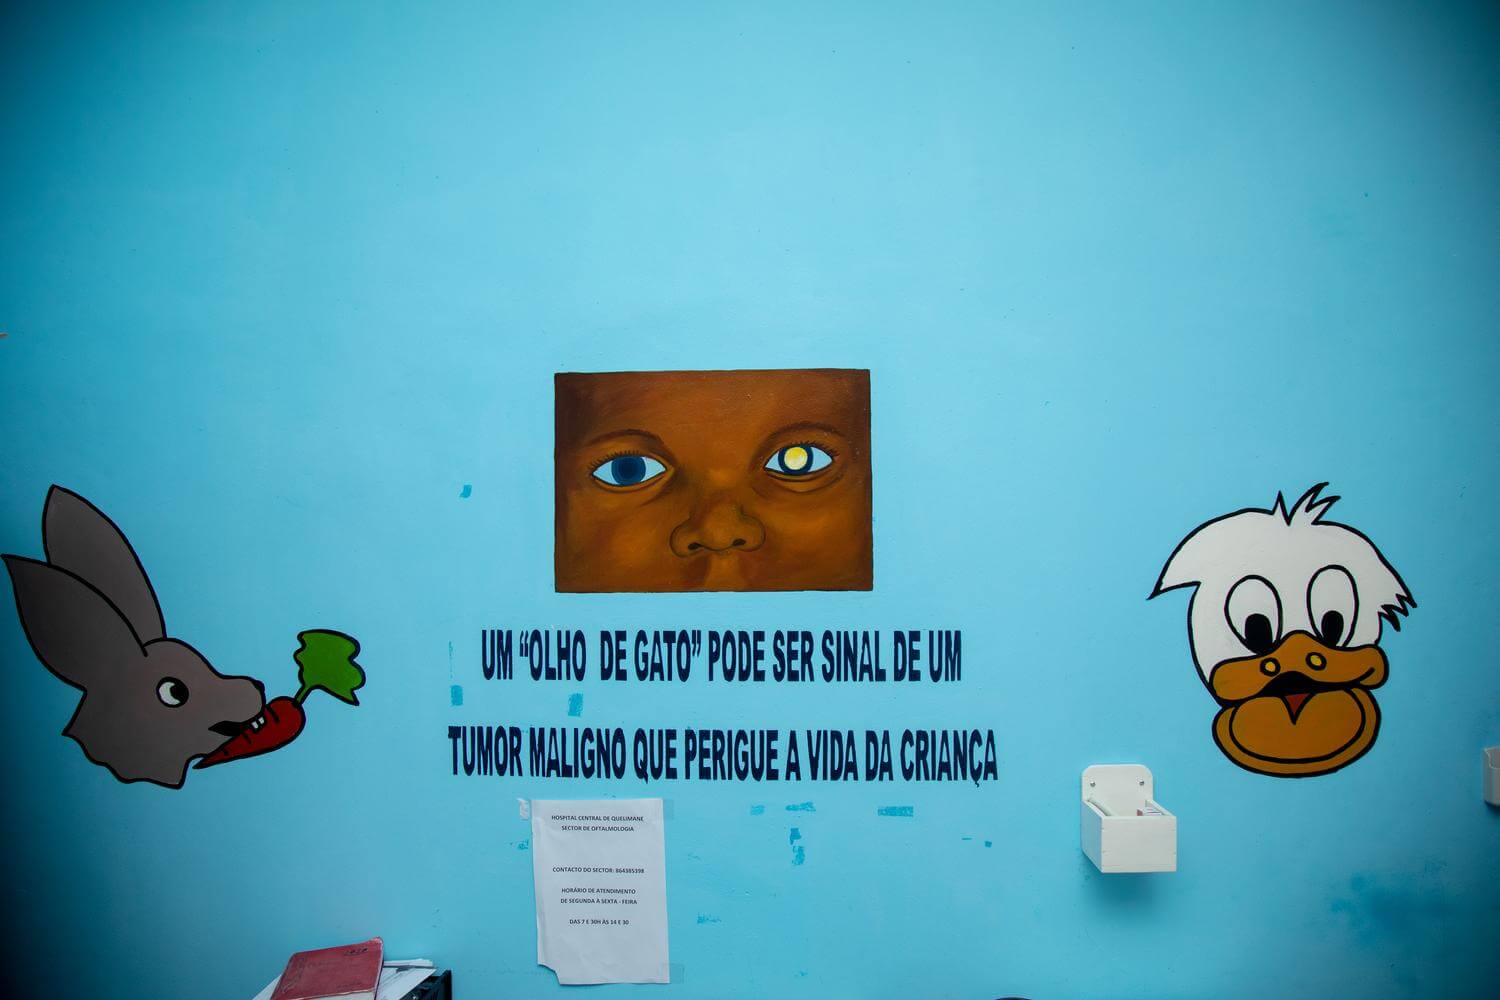 Aufklärungsmalerein über Augenkrankheiten bei Kindern in der Augenklinik in Quelimane, Mosambik